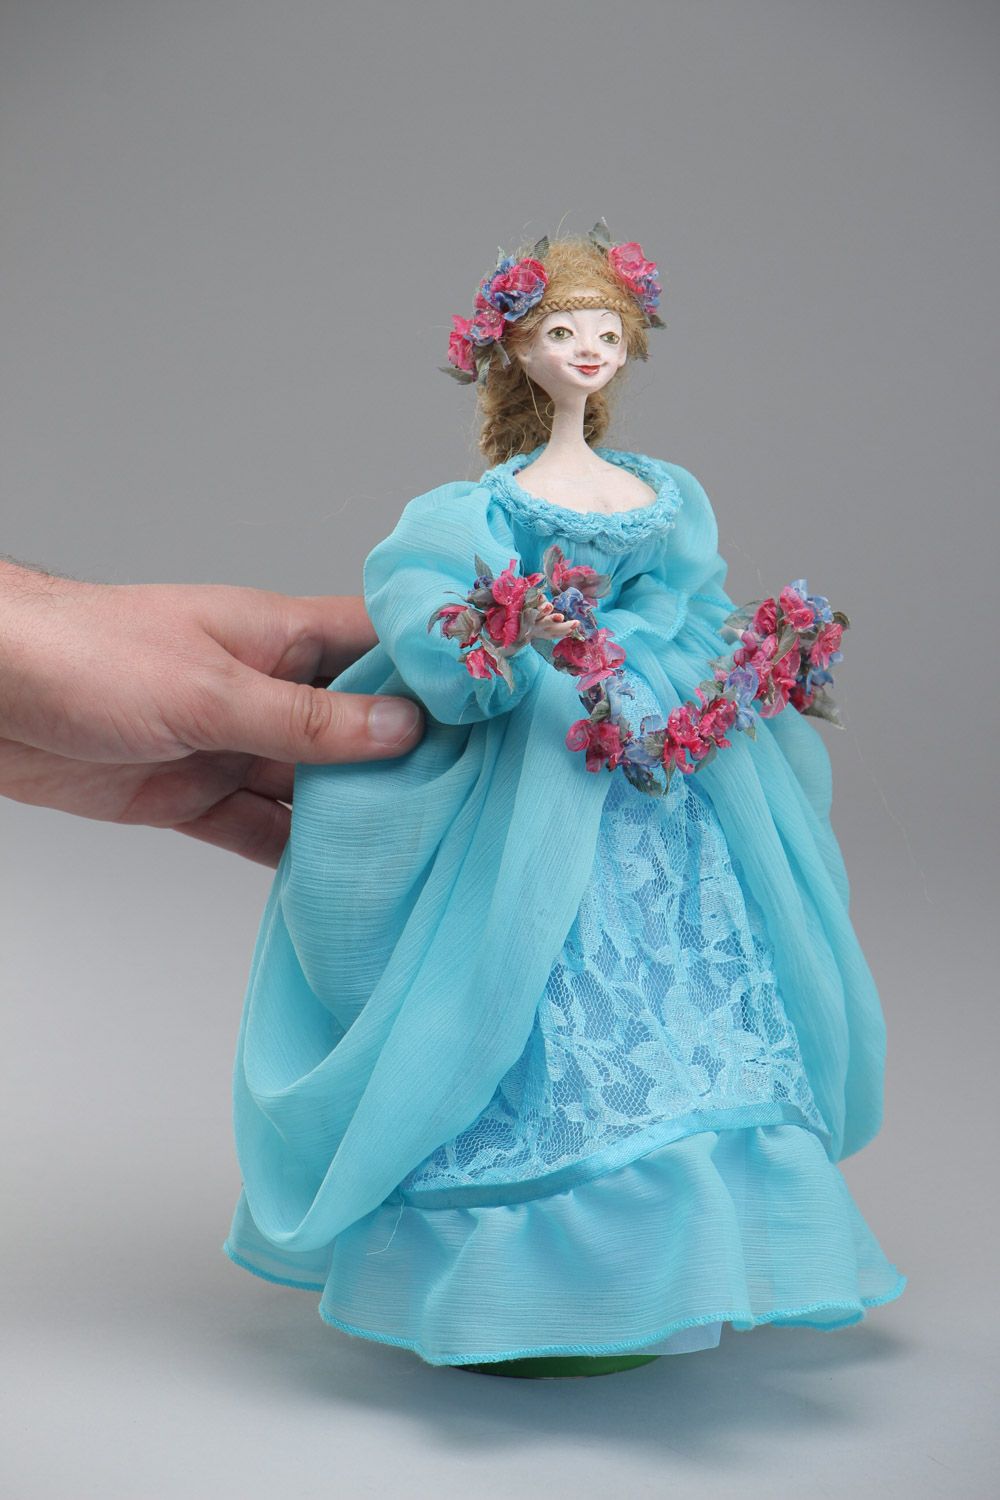 Handmade Kollektion Puppe aus Paperclay Prinzessin in Blau im Stil des Mittelalters foto 5